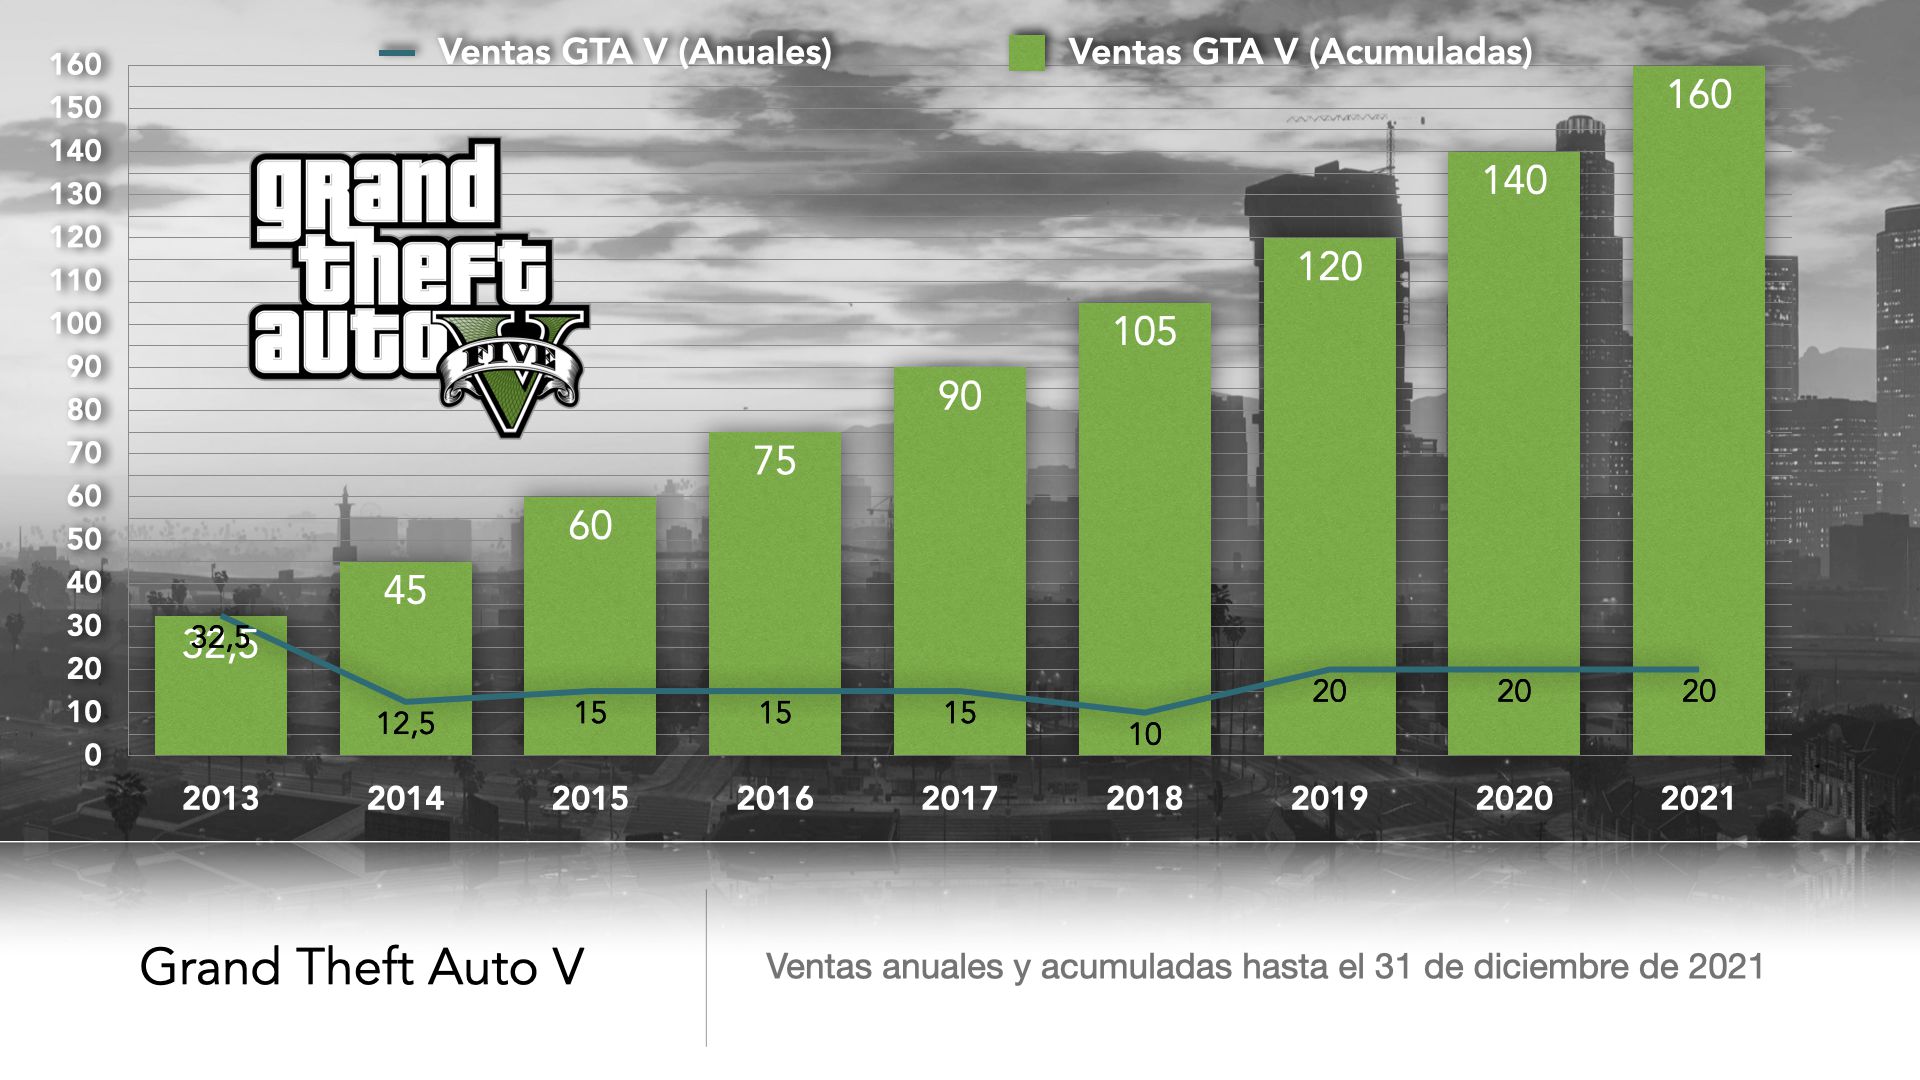 ¿Cuál es el GTA más vendido